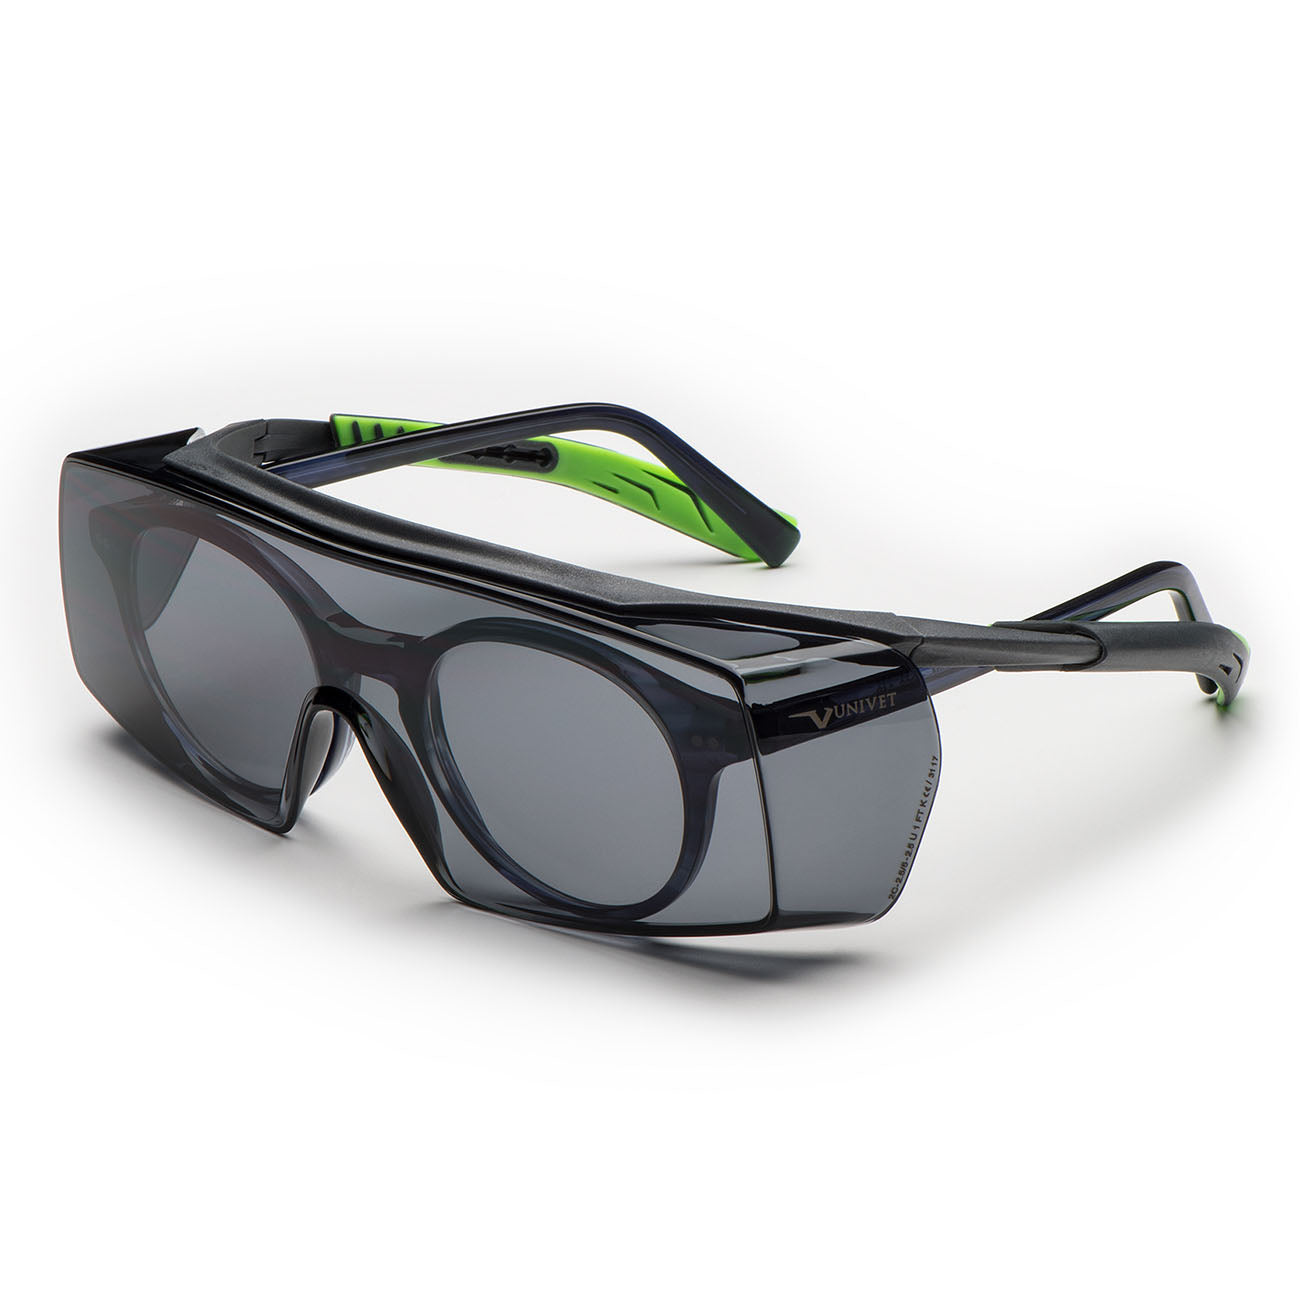 Univet 5X7 Solar Smoke OTG Safety Glasses - 5X7.01.11.02